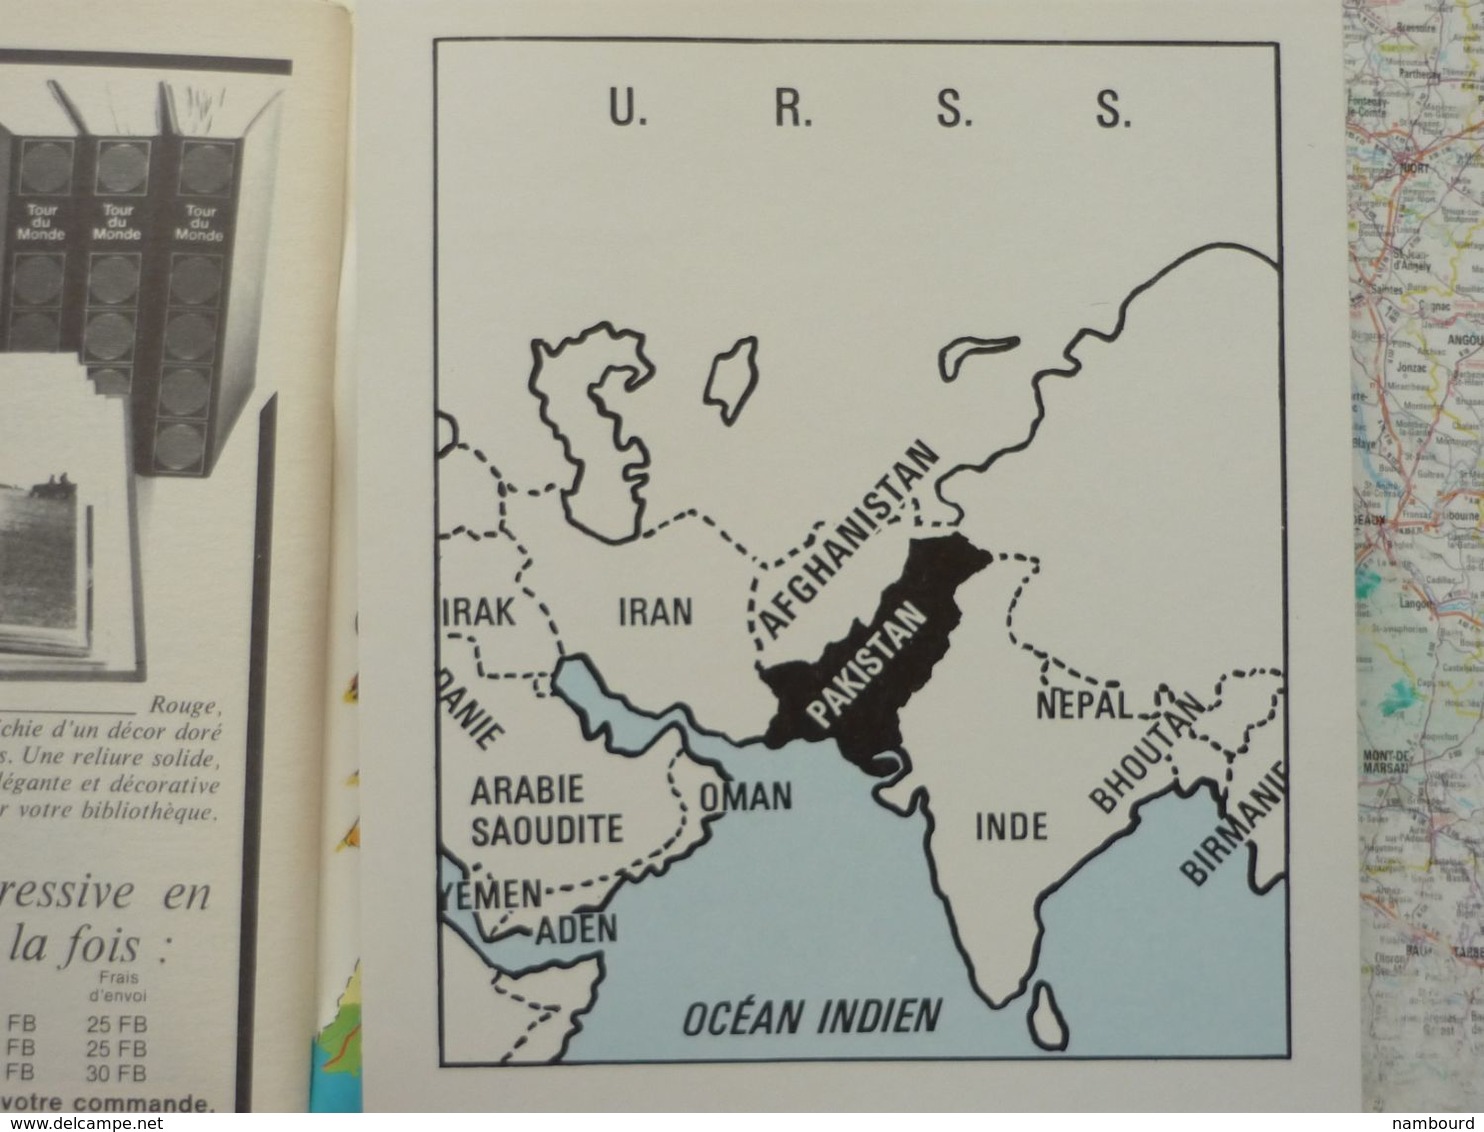 Tour du Monde N°226 République Islamique du Pakistan - Les animaux et les hommes - Les Temples de Philae Juillet 1978